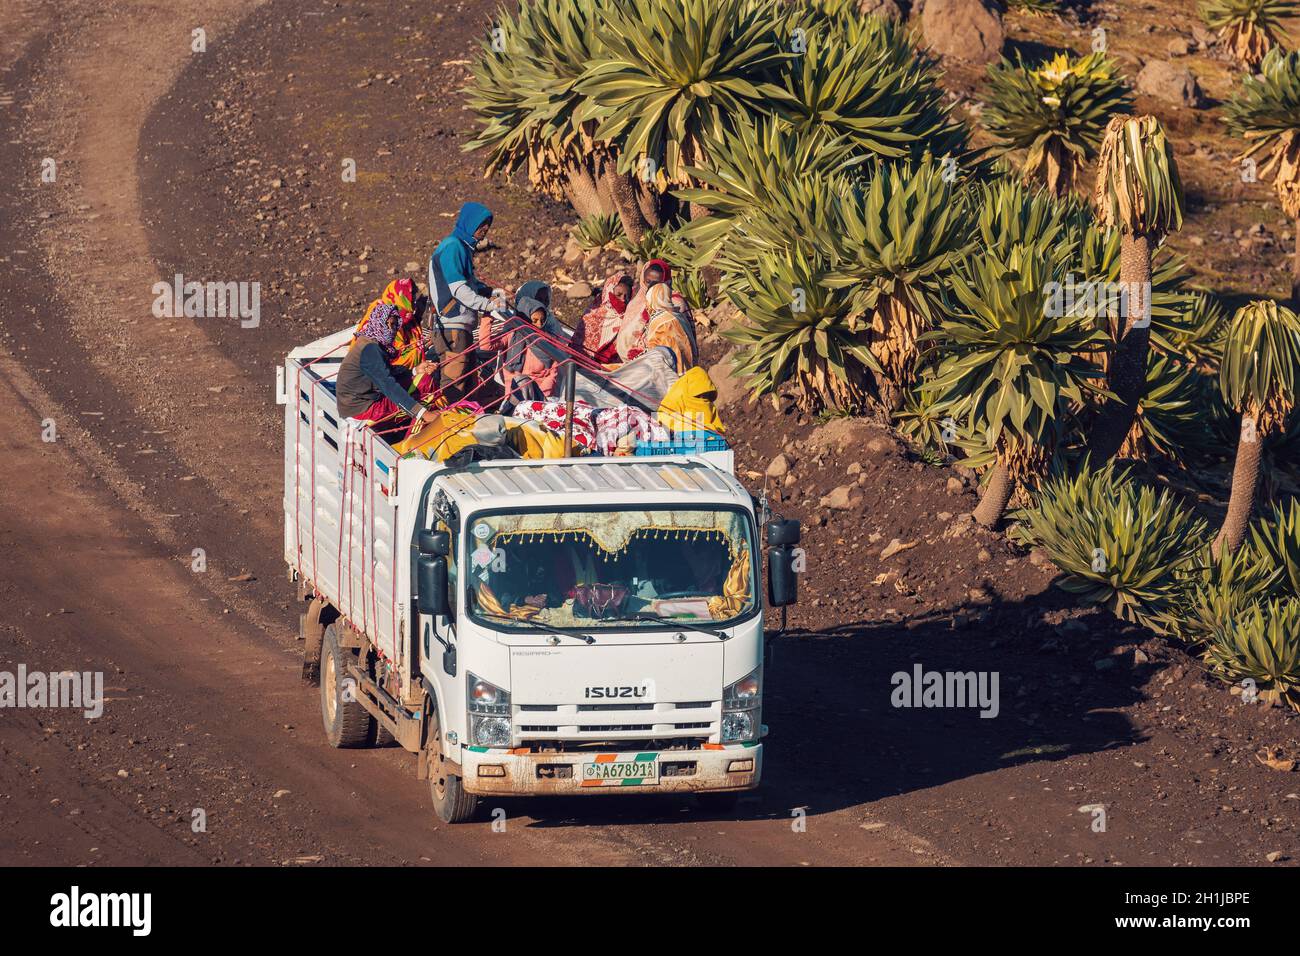 SIMIEN MOUNTAIN, ÄTHIOPIEN, 25. APRIL 2019, Menschen, die gefährlich mit voll beladenem LKW unterwegs sind, in Simien Mountains, Äthiopien, April 25. 2019 Stockfoto